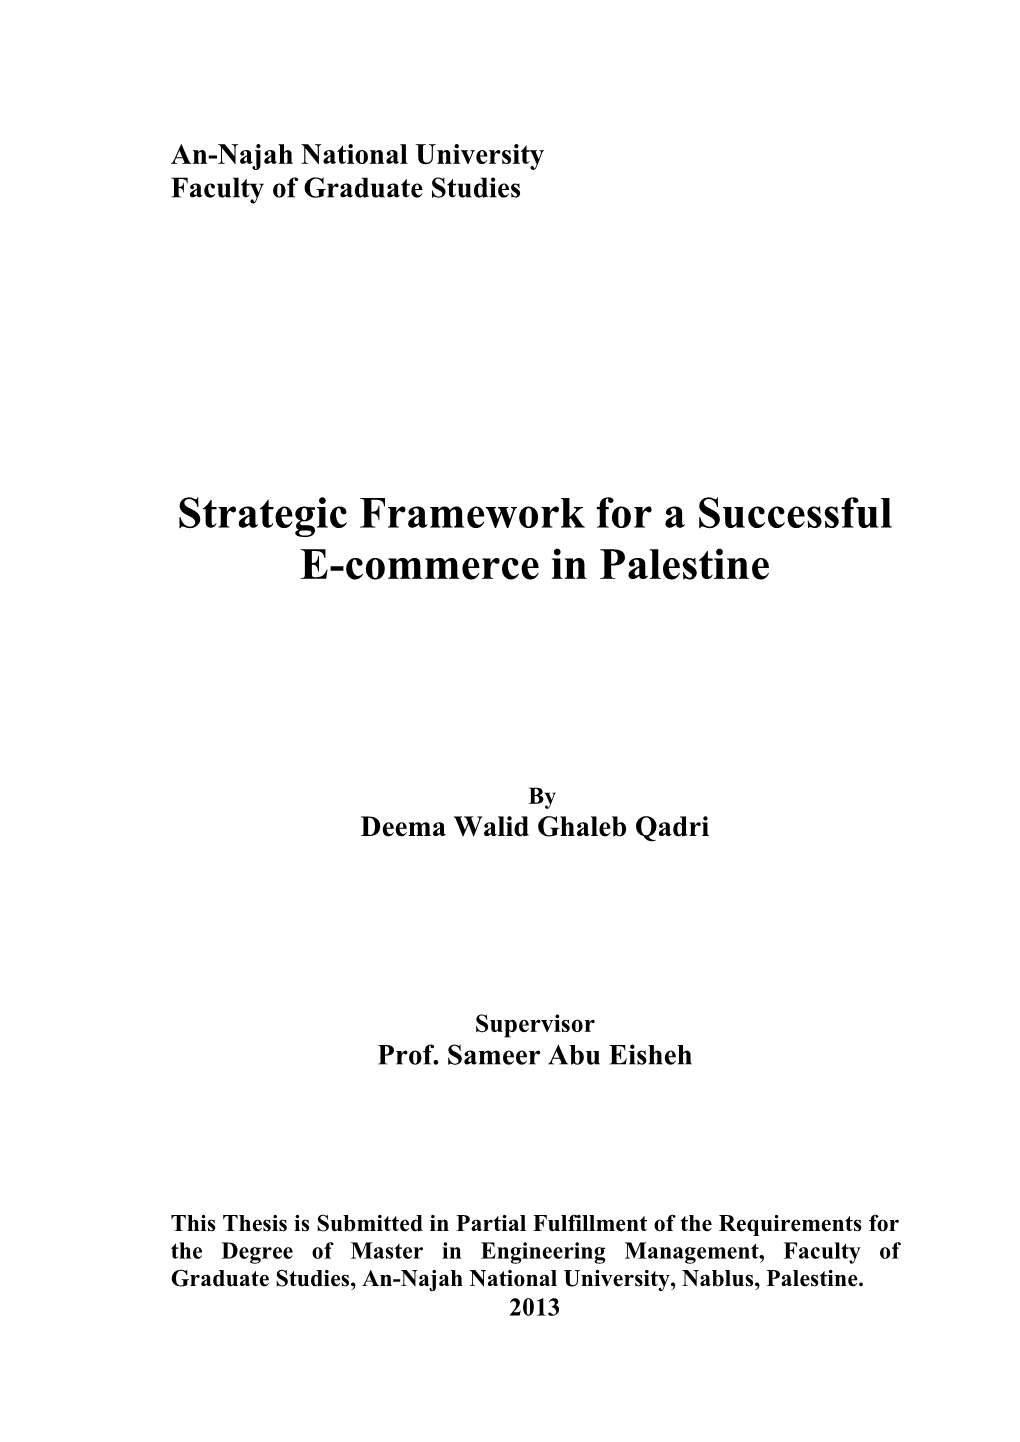 Strategic Framework for a Successful E-Commerce in Palestine